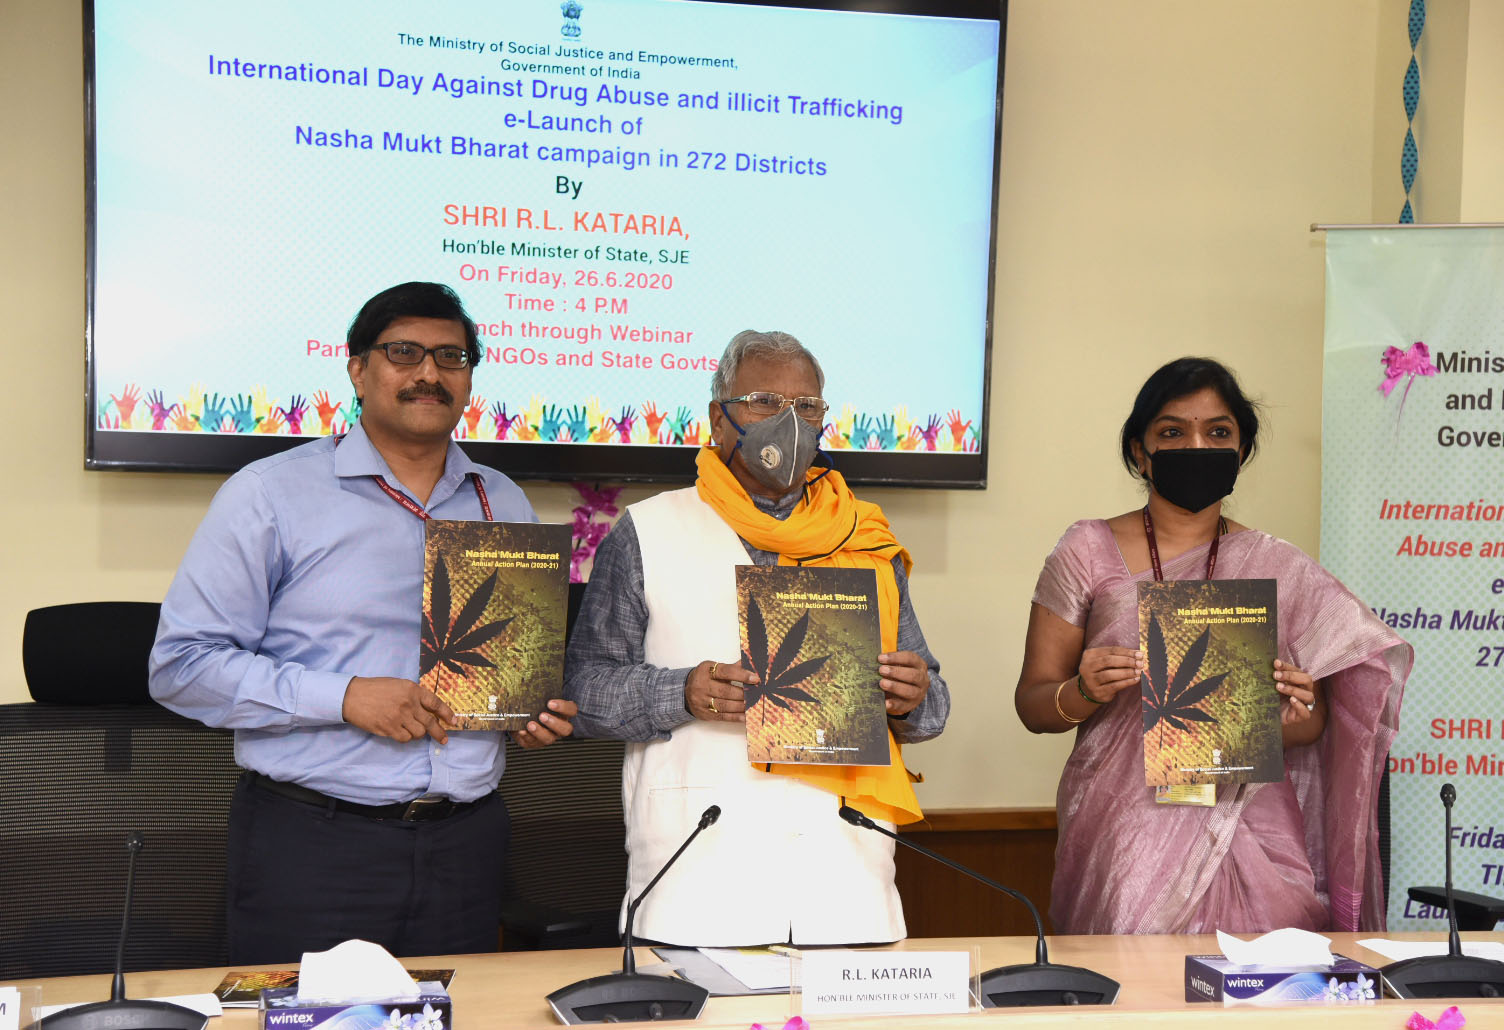 नशा मुक्त भारत : “अंतरराष्ट्रीय मादक पदार्थ सेवन और तस्करी निरोध दिवस” पर आज 272 सबसे ज्यादा प्रभावित जिलों के लिए वार्षिक कार्य योजना (2020-21) का ई-शुभारम्भ किया गया